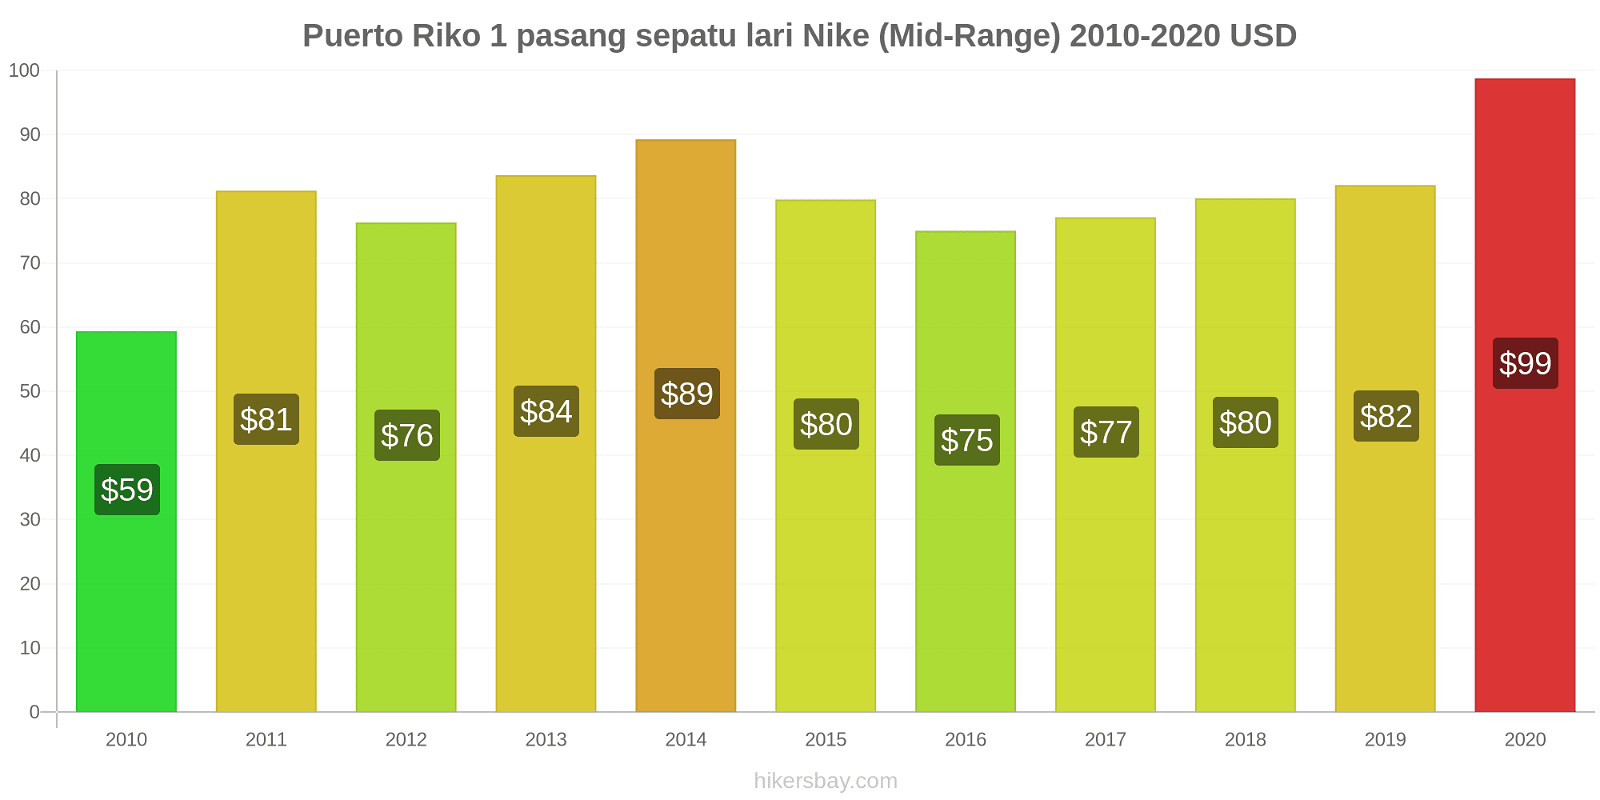 Puerto Riko perubahan harga 1 pasang sepatu lari Nike (Mid-Range) hikersbay.com